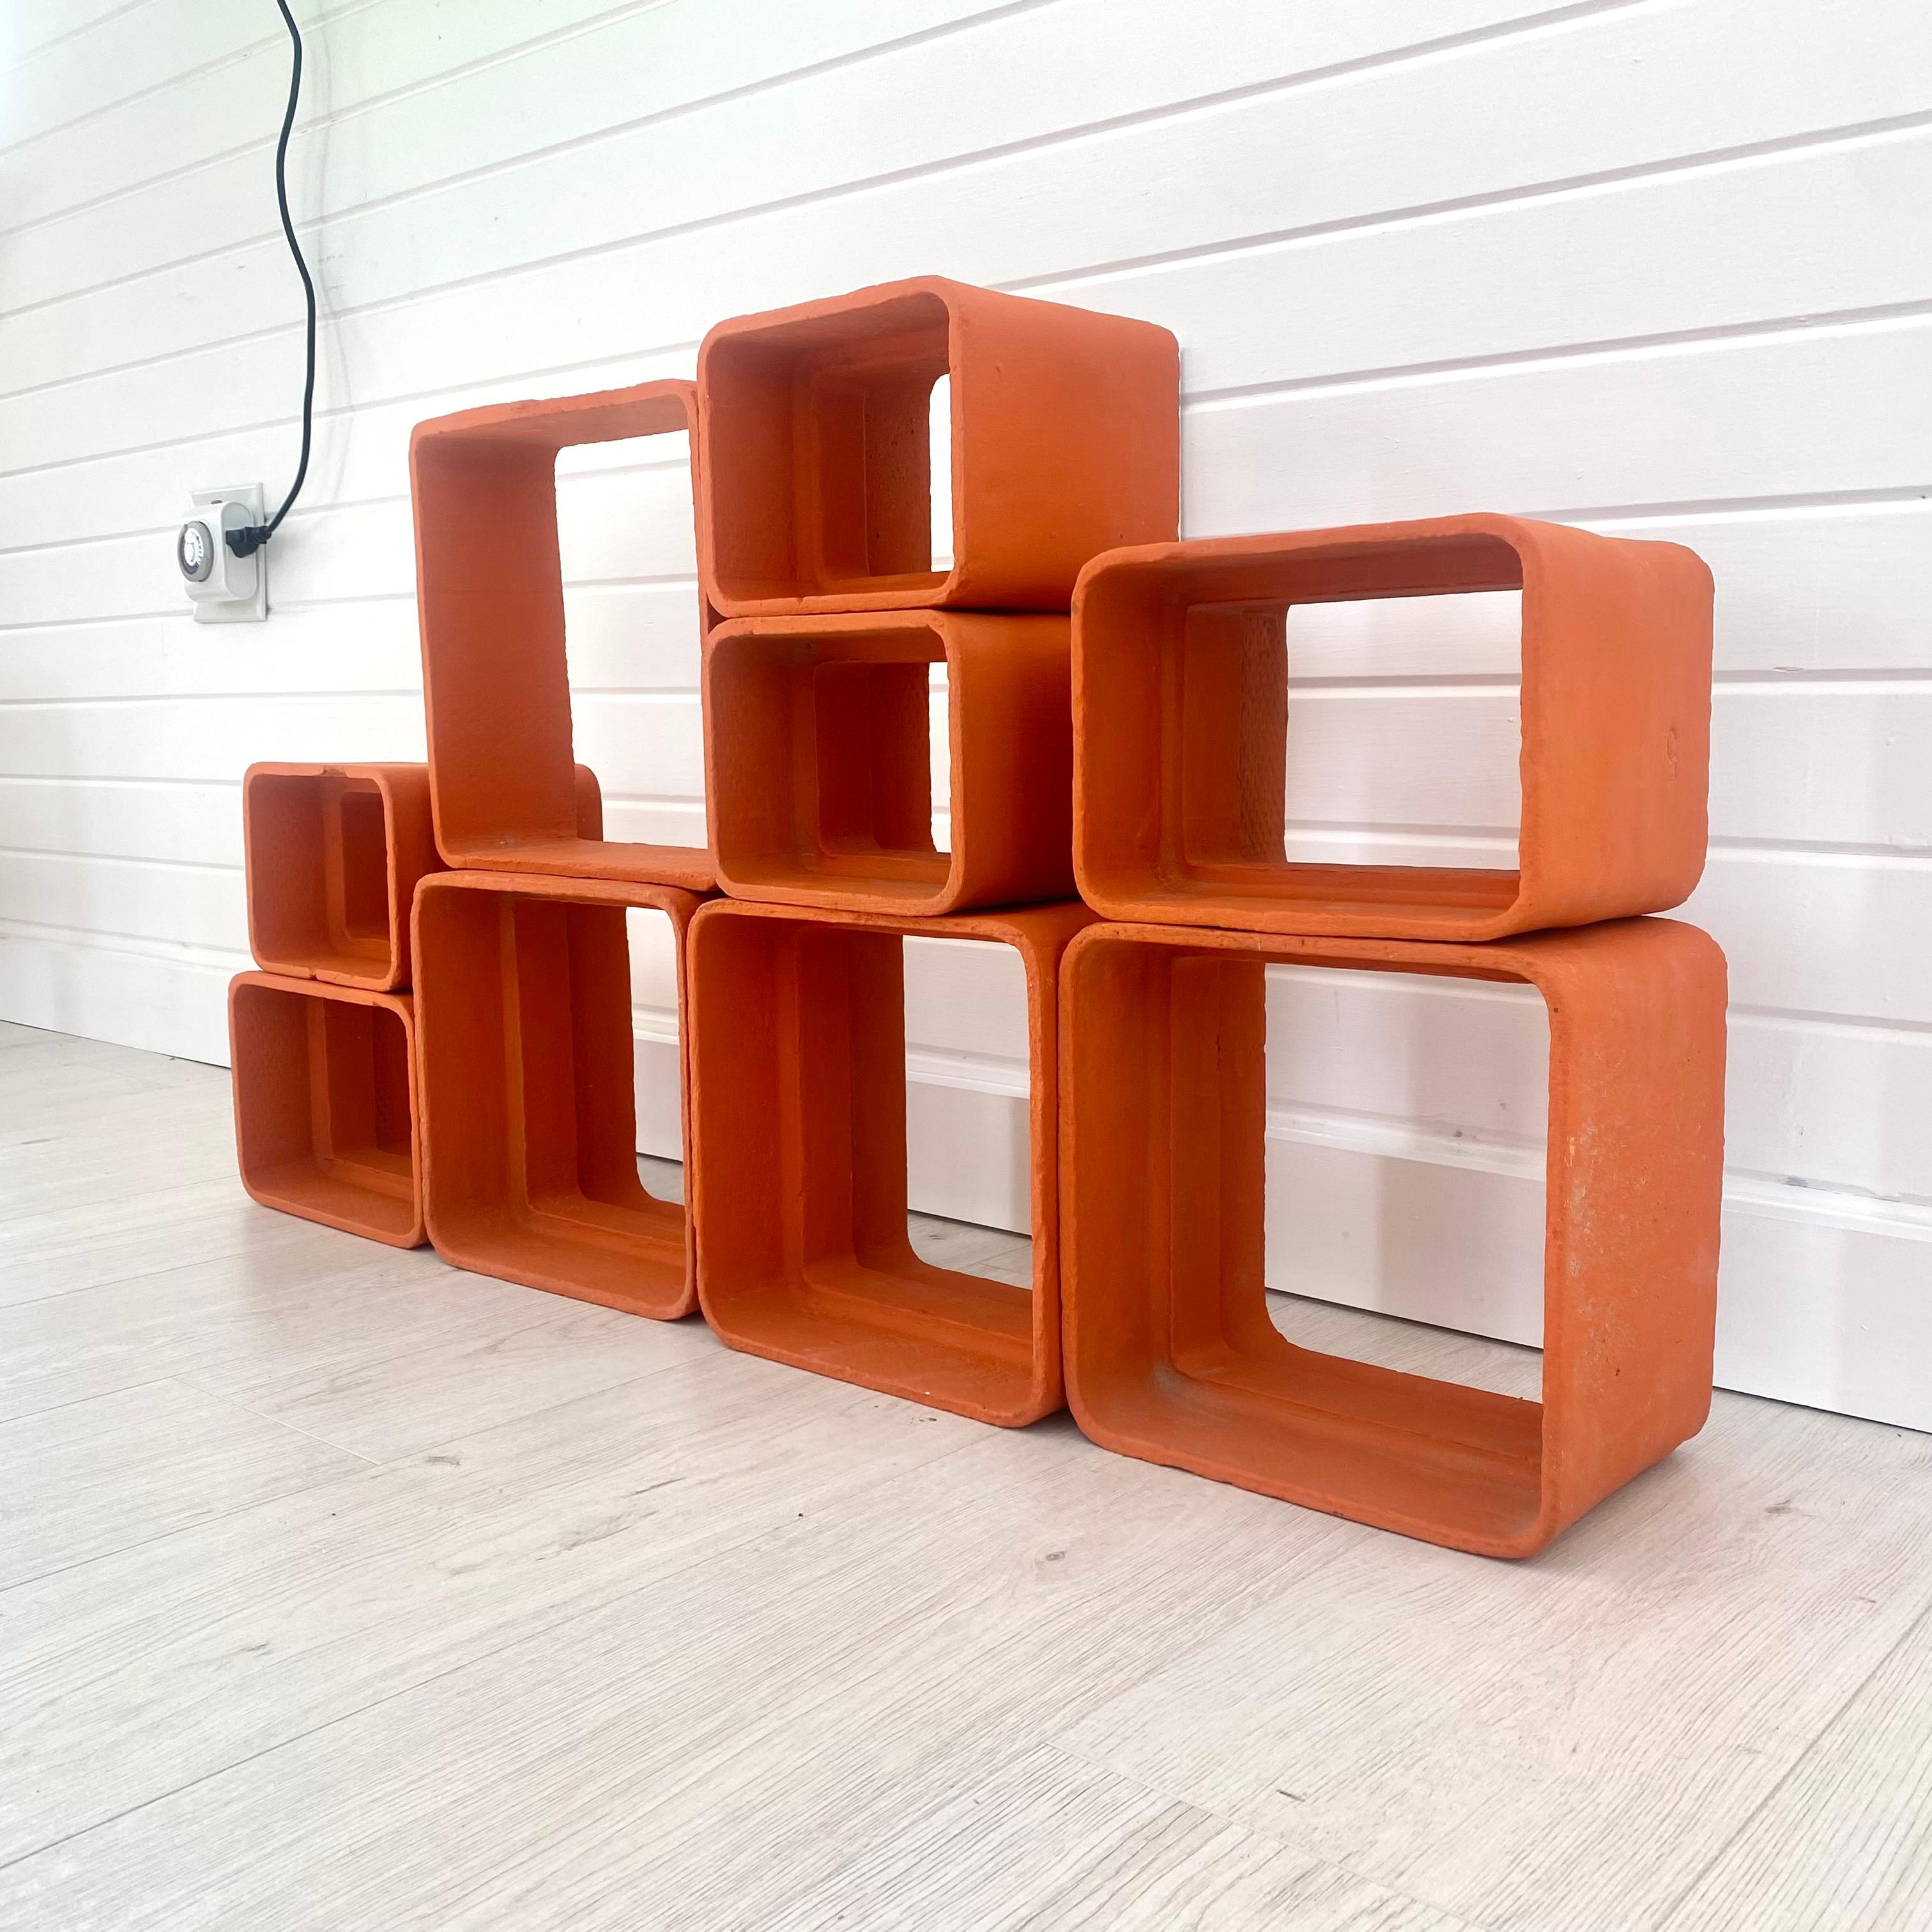 Willy Guhl Orange Concrete Bookcase, 1960s Switzerland For Sale 2